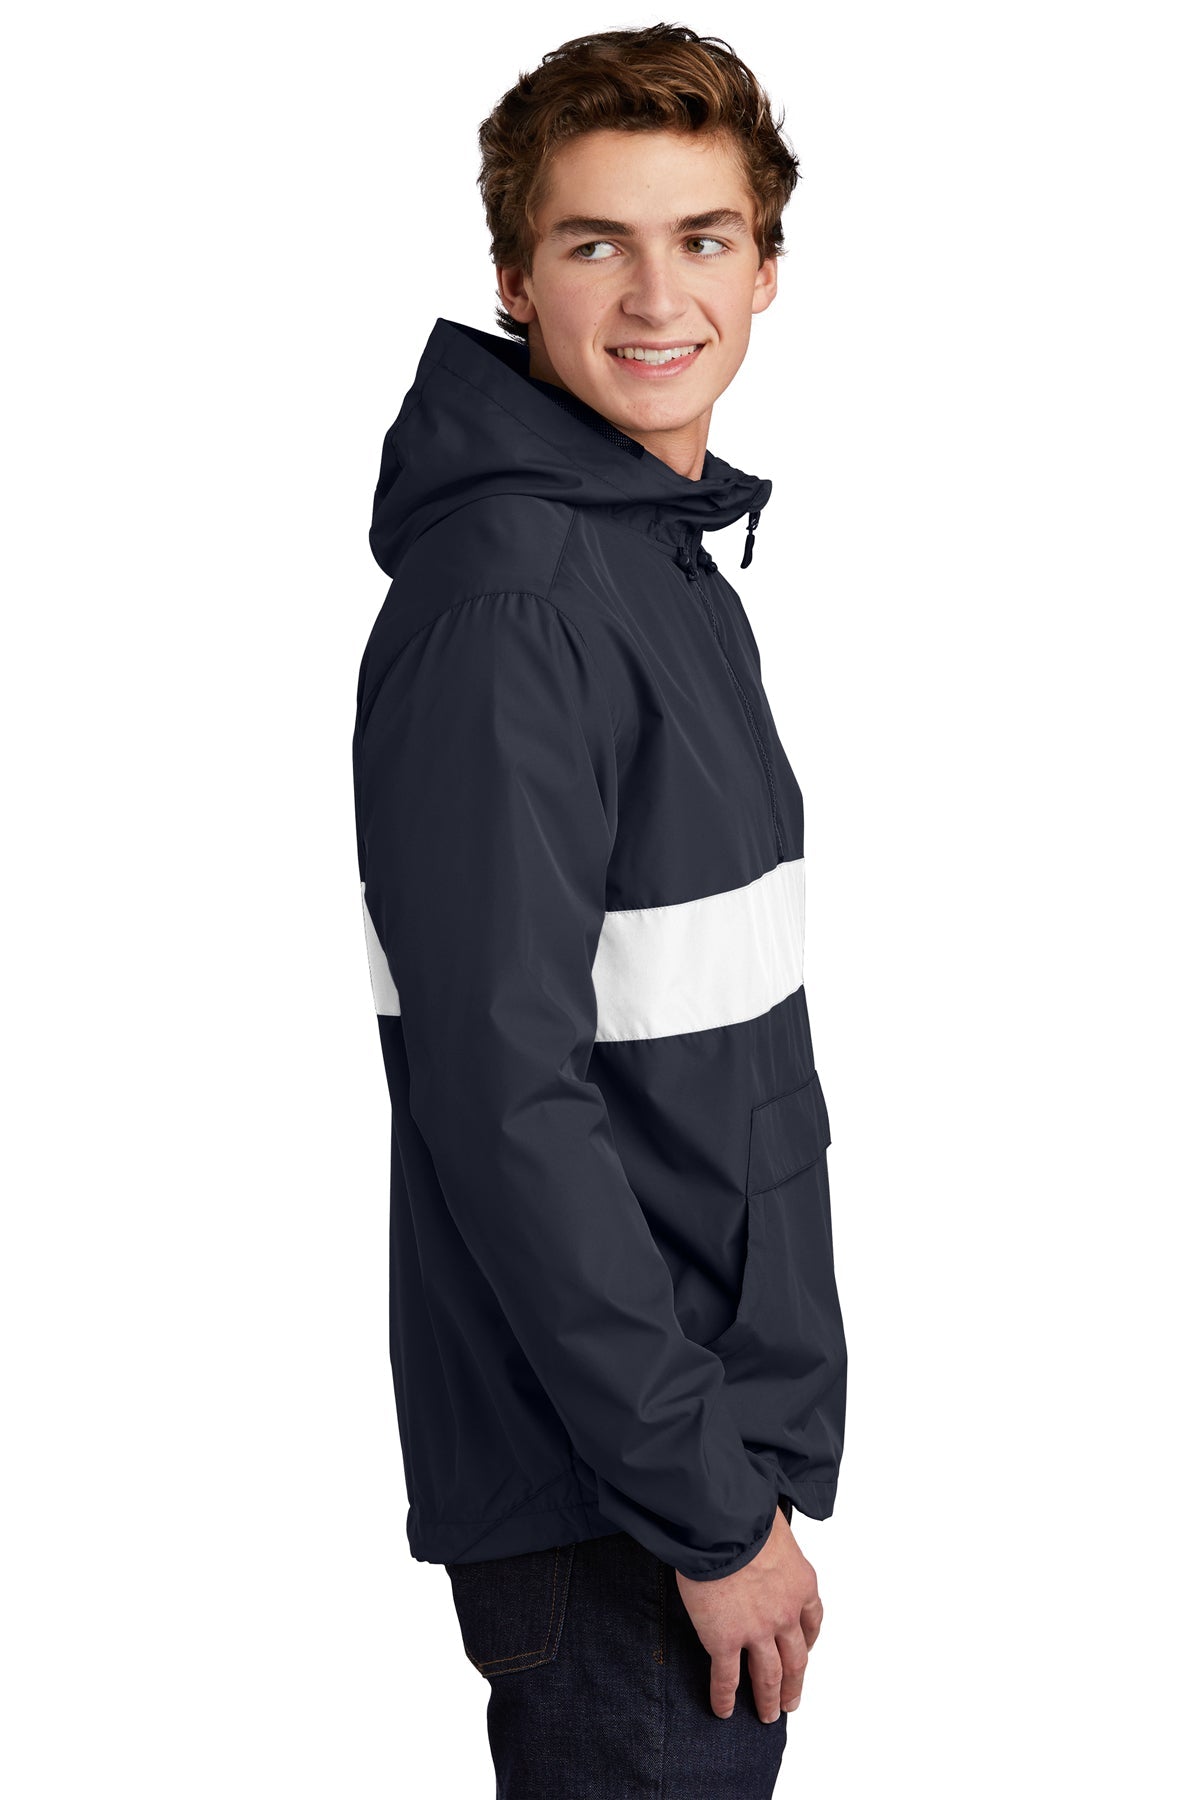 sport-tek_jst65 _true navy/ white_company_logo_jackets